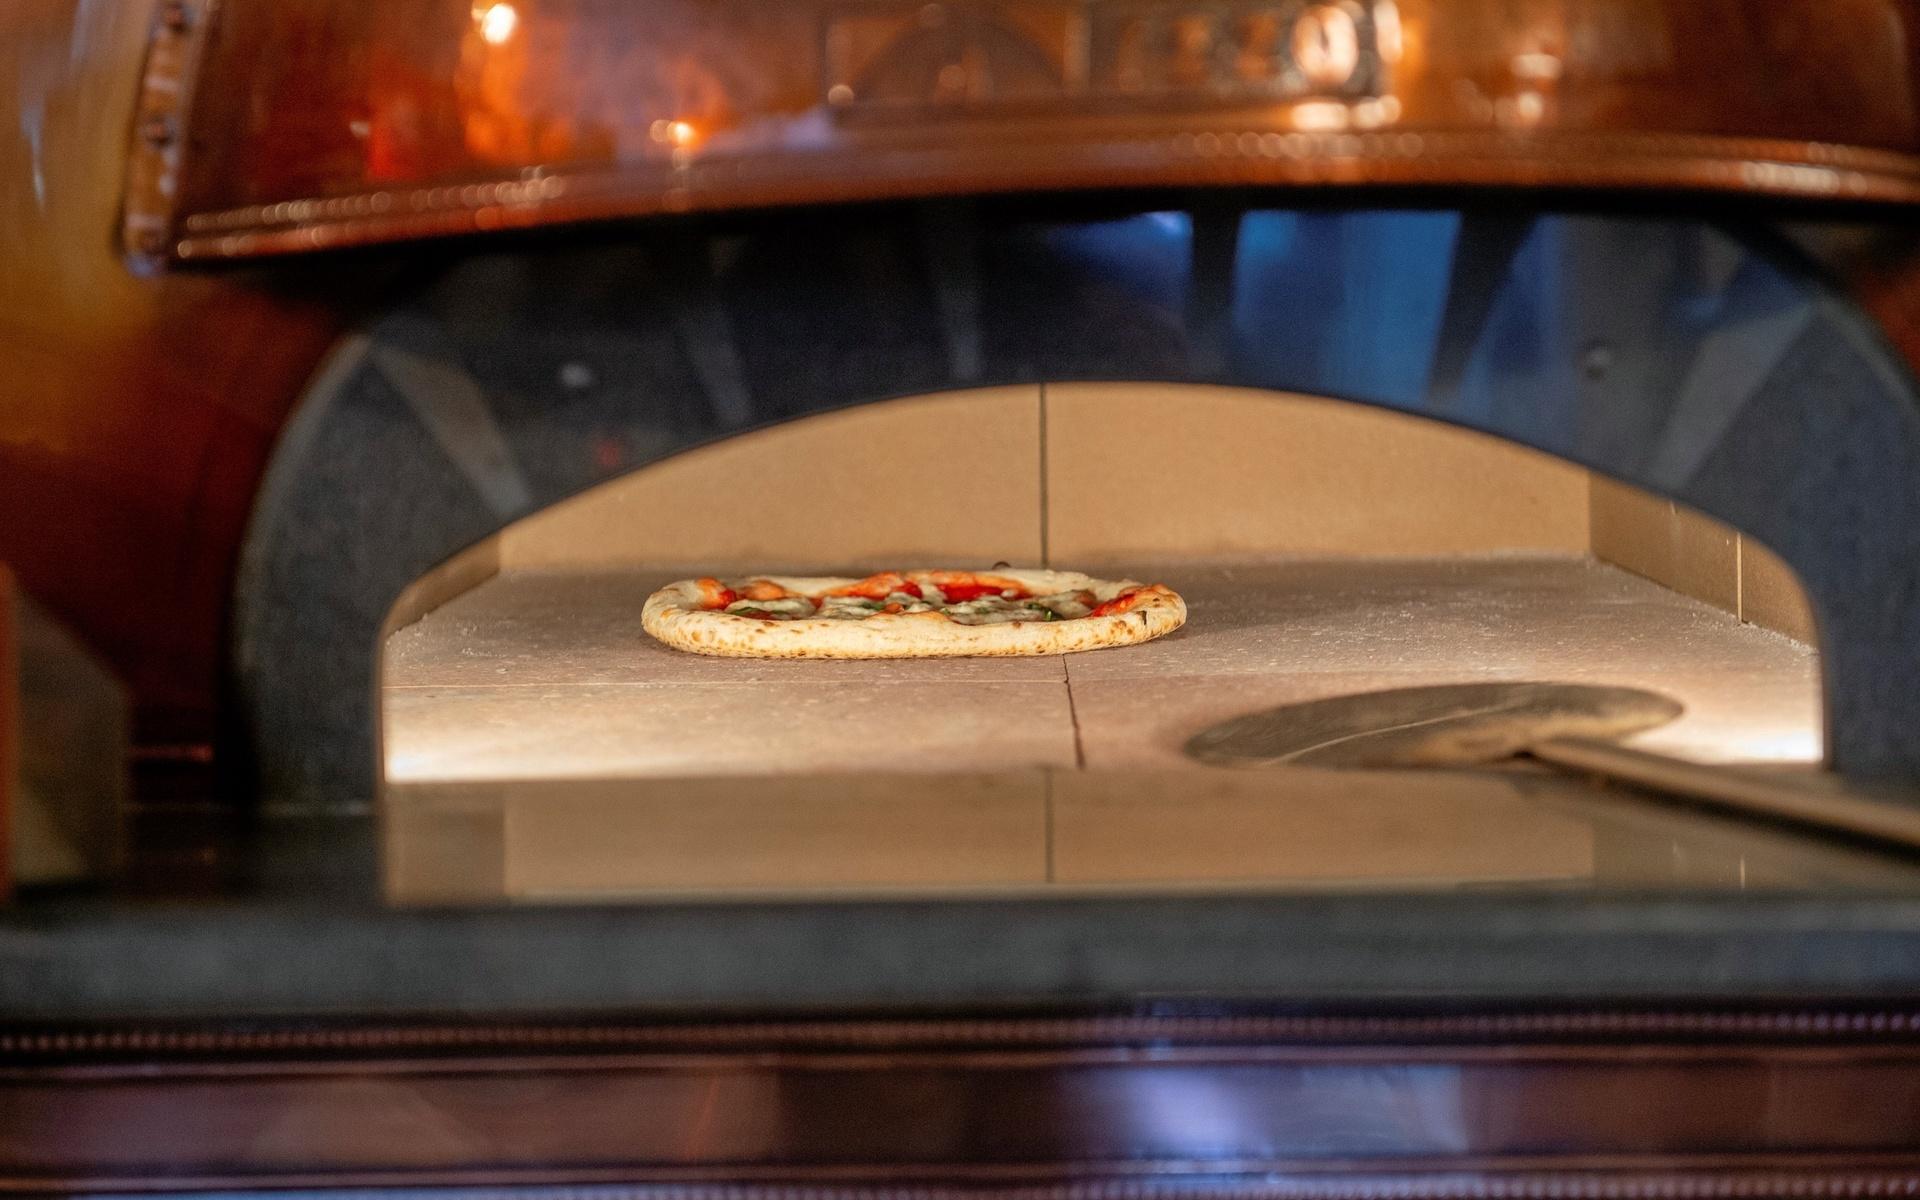 Pizzan tillagas i ungefär en minut i den varma ugnen. 